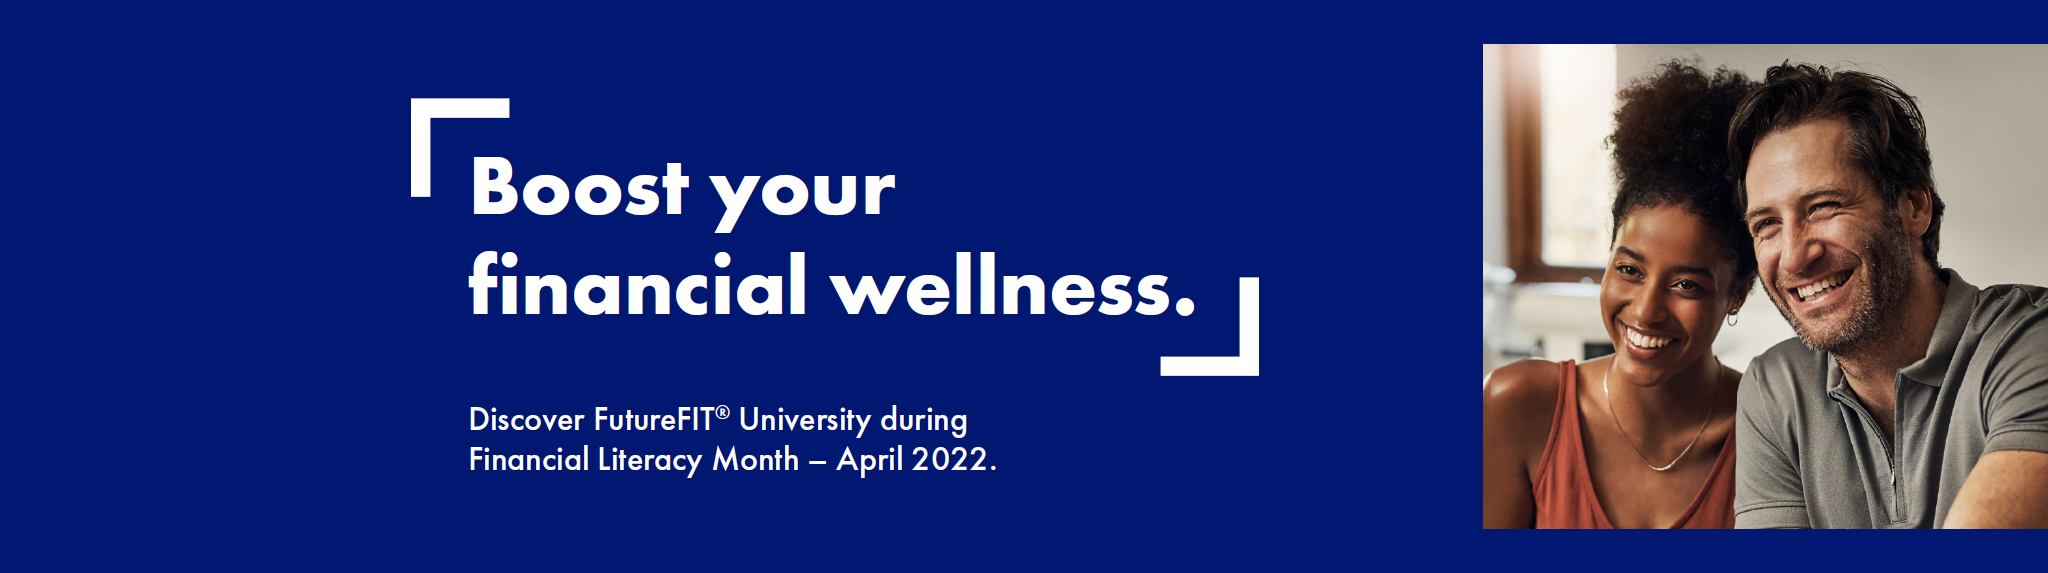 Financial Wellness month AIG banner